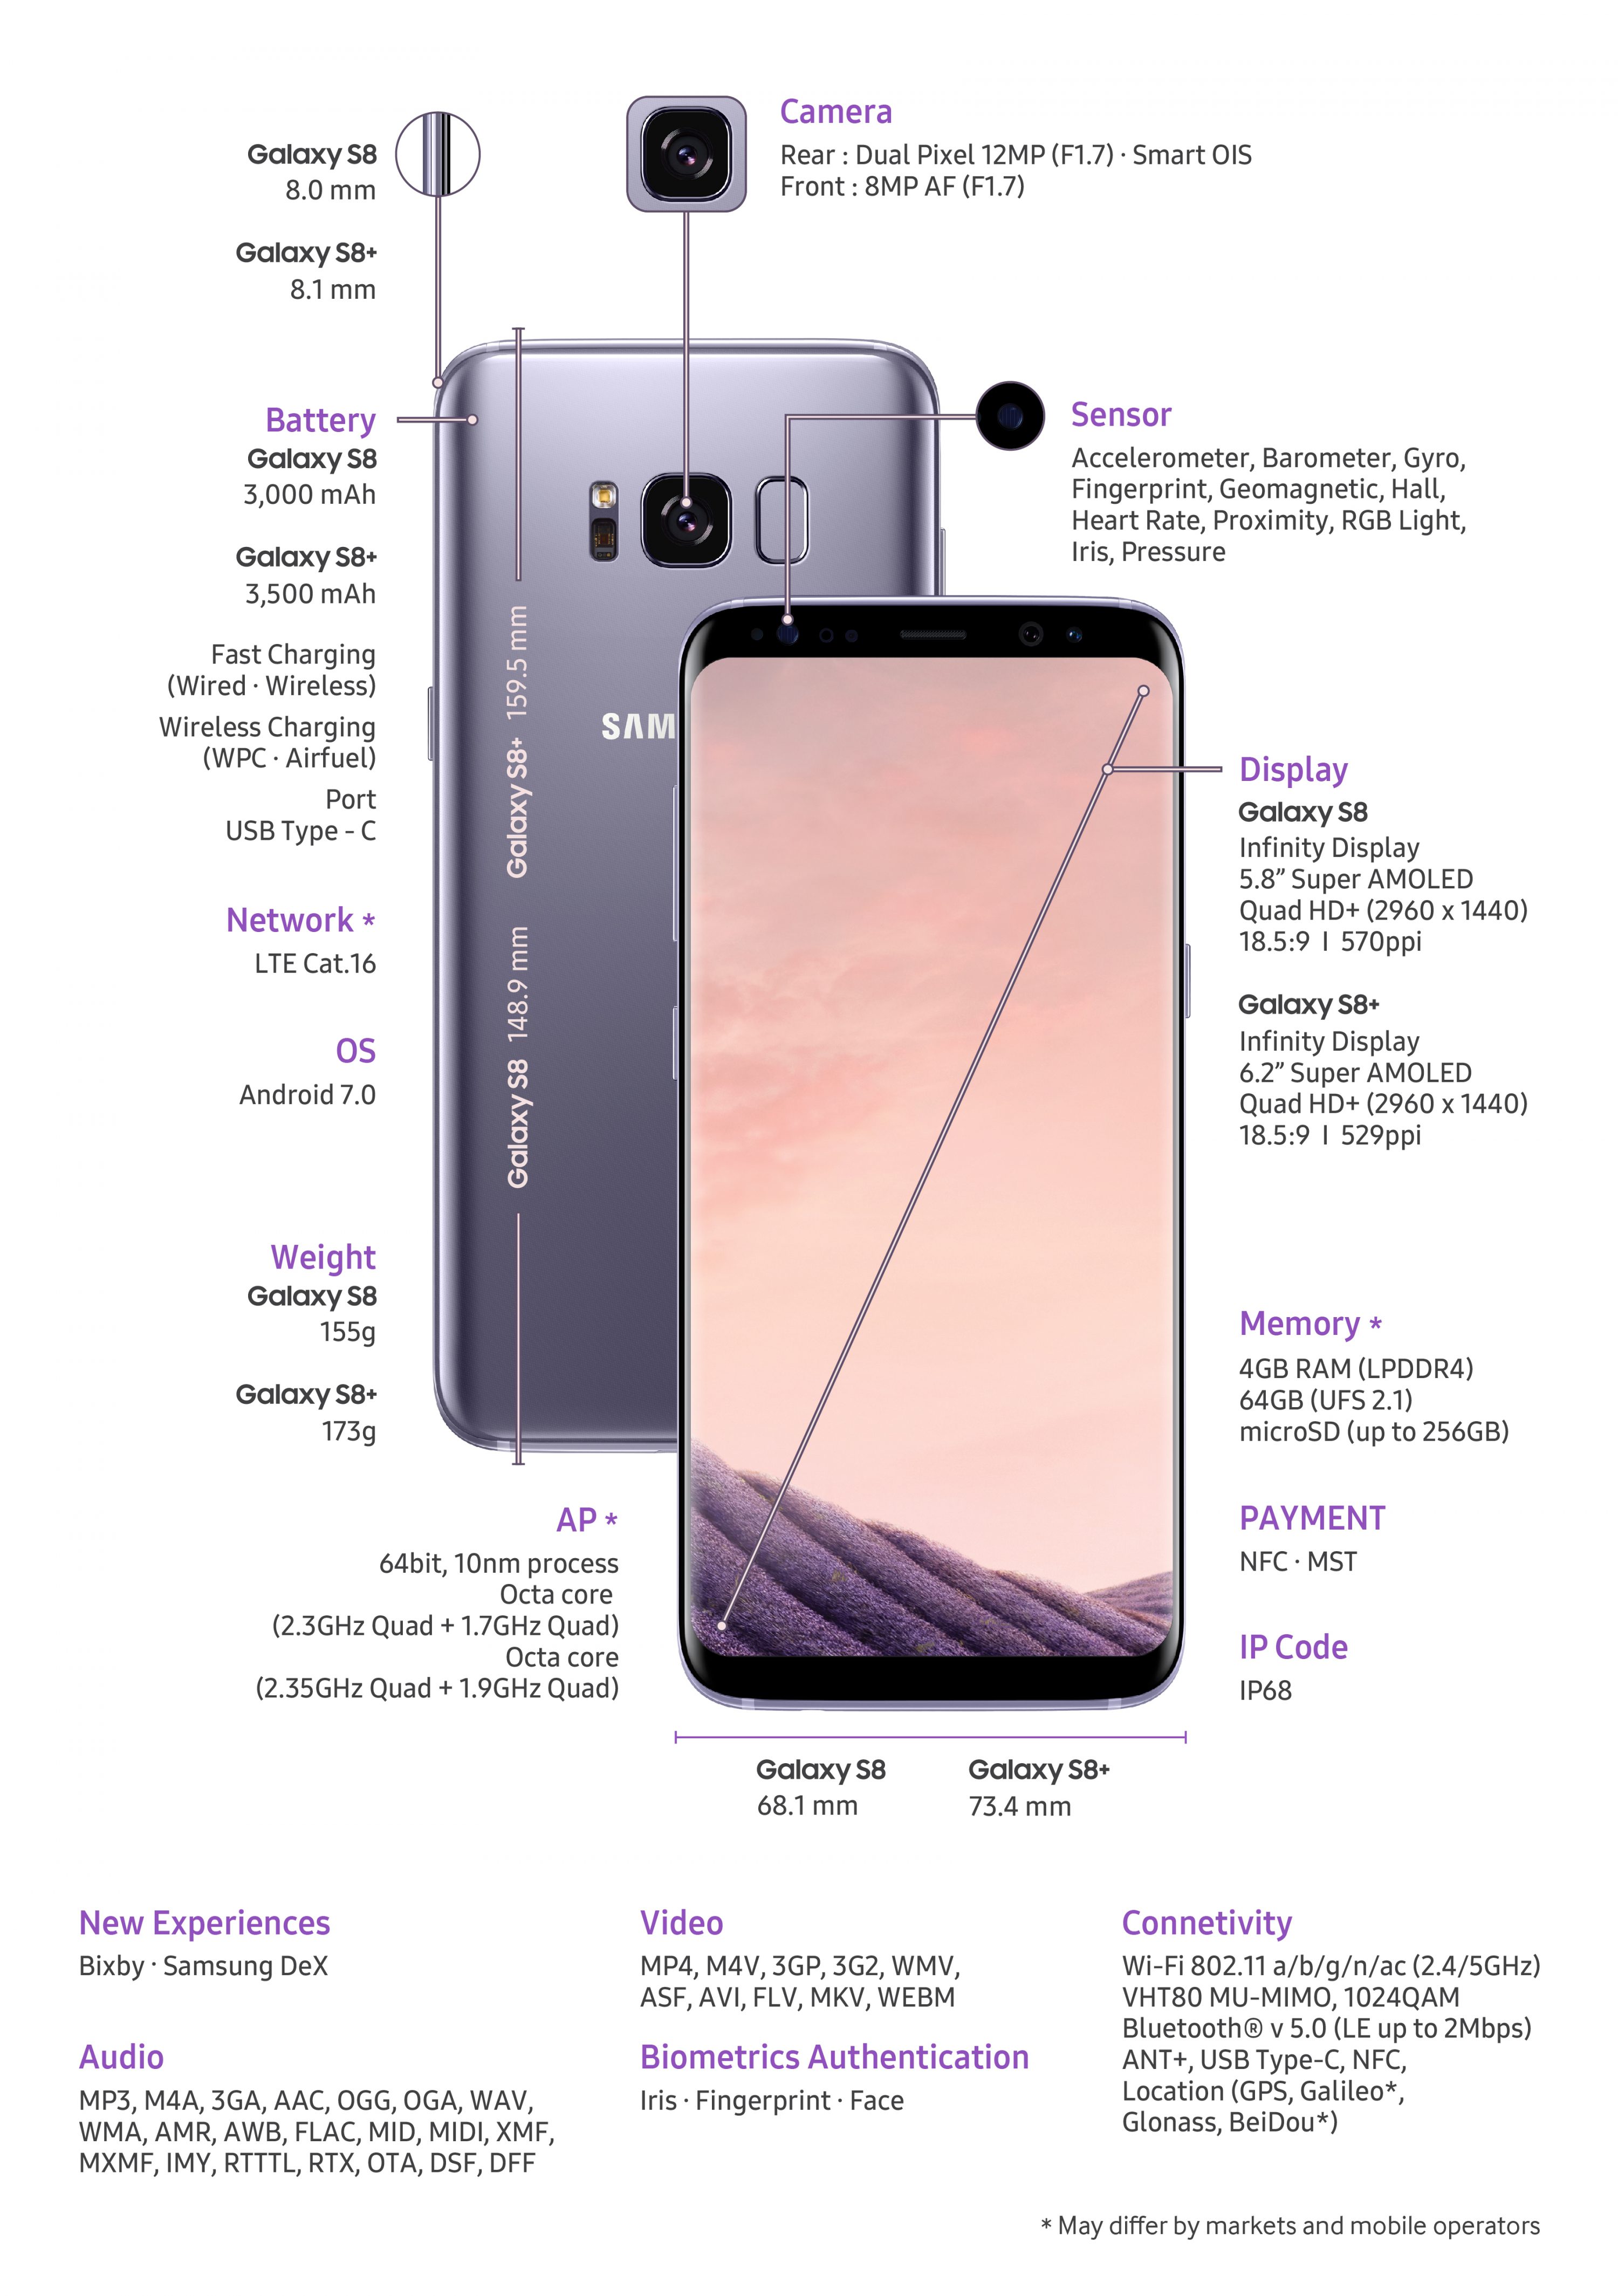 Официально представлены Samsung Galaxy S8 и S8+